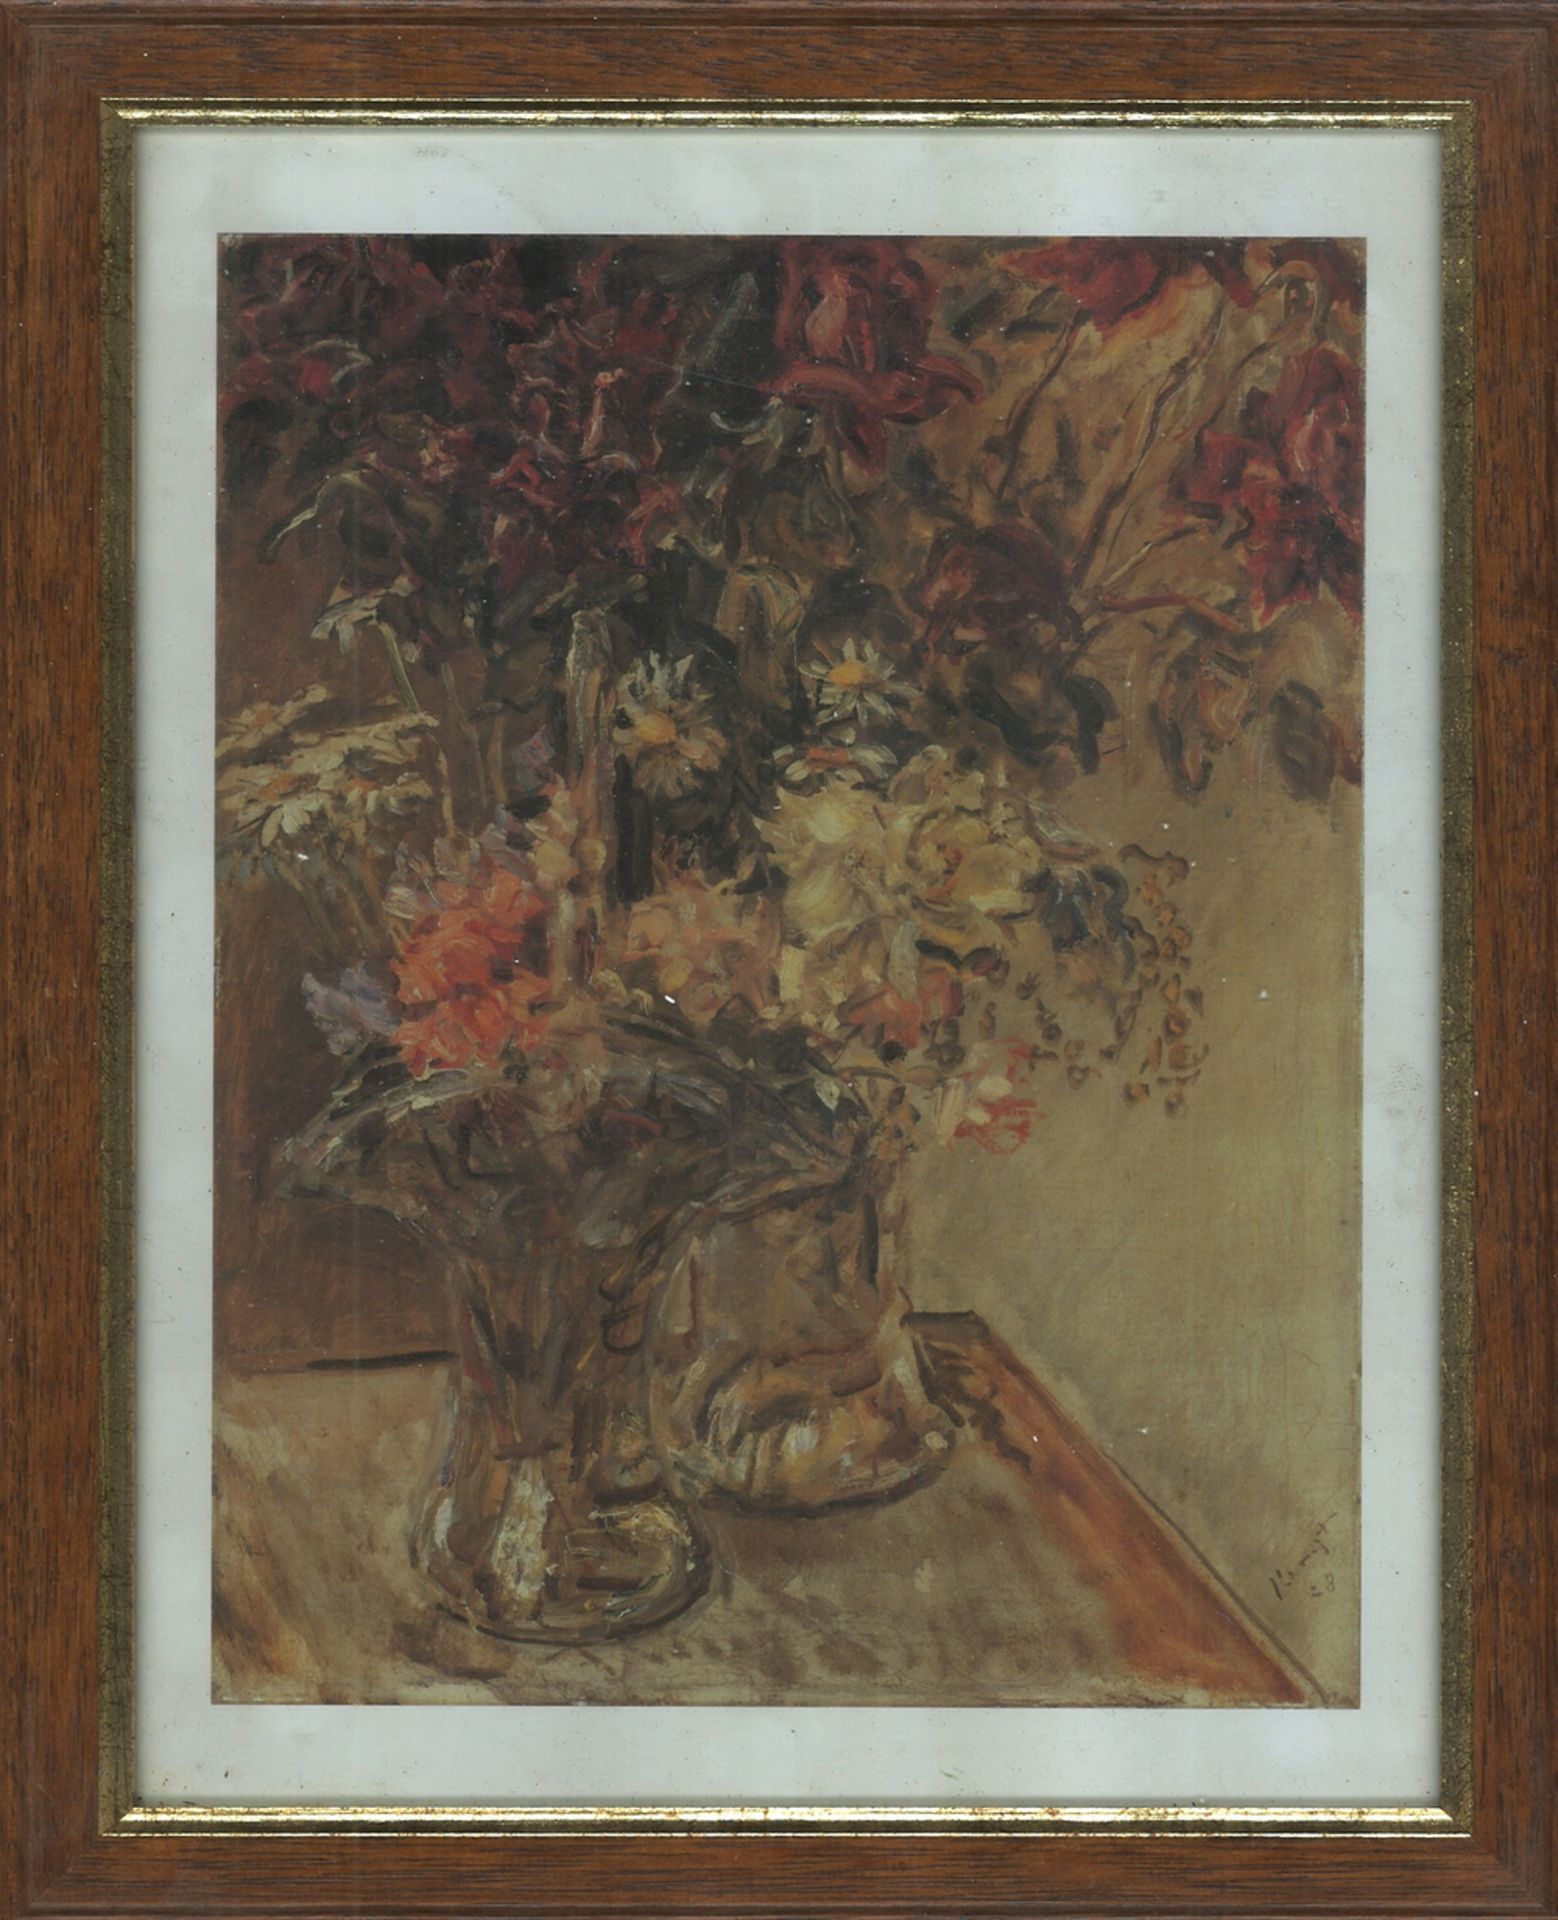 Druck nach dem Ölgemälde von Max Slevogt (1868 - 1932) "Sommerblumen" 1928, hinter Glas gerahmt.